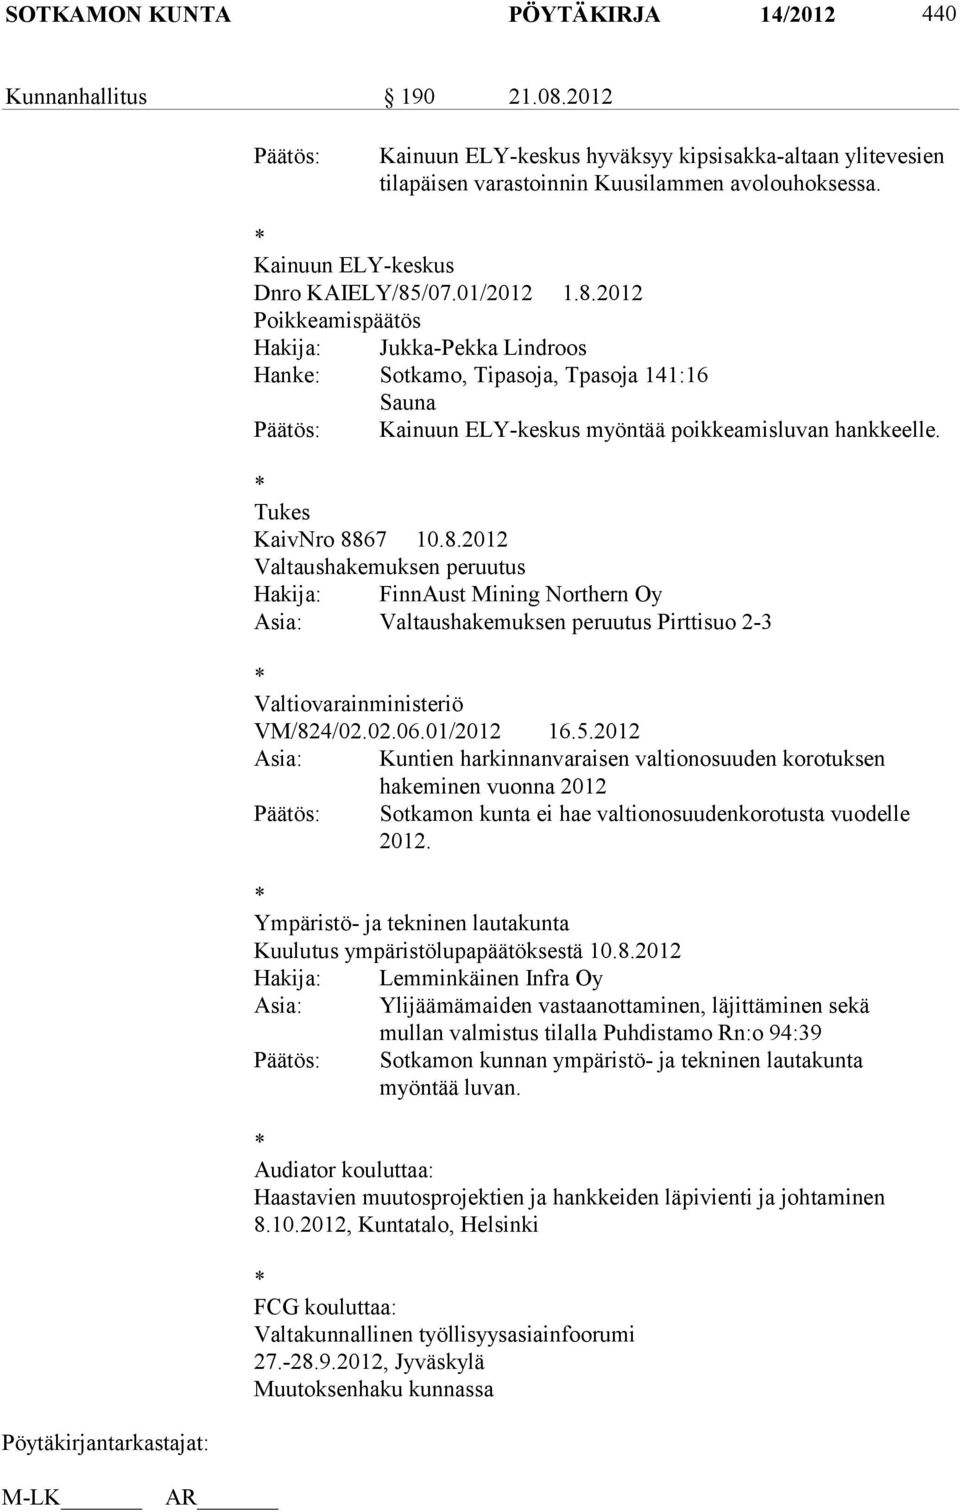 * Tukes KaivNro 8867 10.8.2012 Valtaushakemuksen peruutus Hakija: FinnAust Mining Northern Oy Asia: Valtaushakemuksen peruutus Pirttisuo 2-3 * Valtiovarainministeriö VM/824/02.02.06.01/2012 16.5.